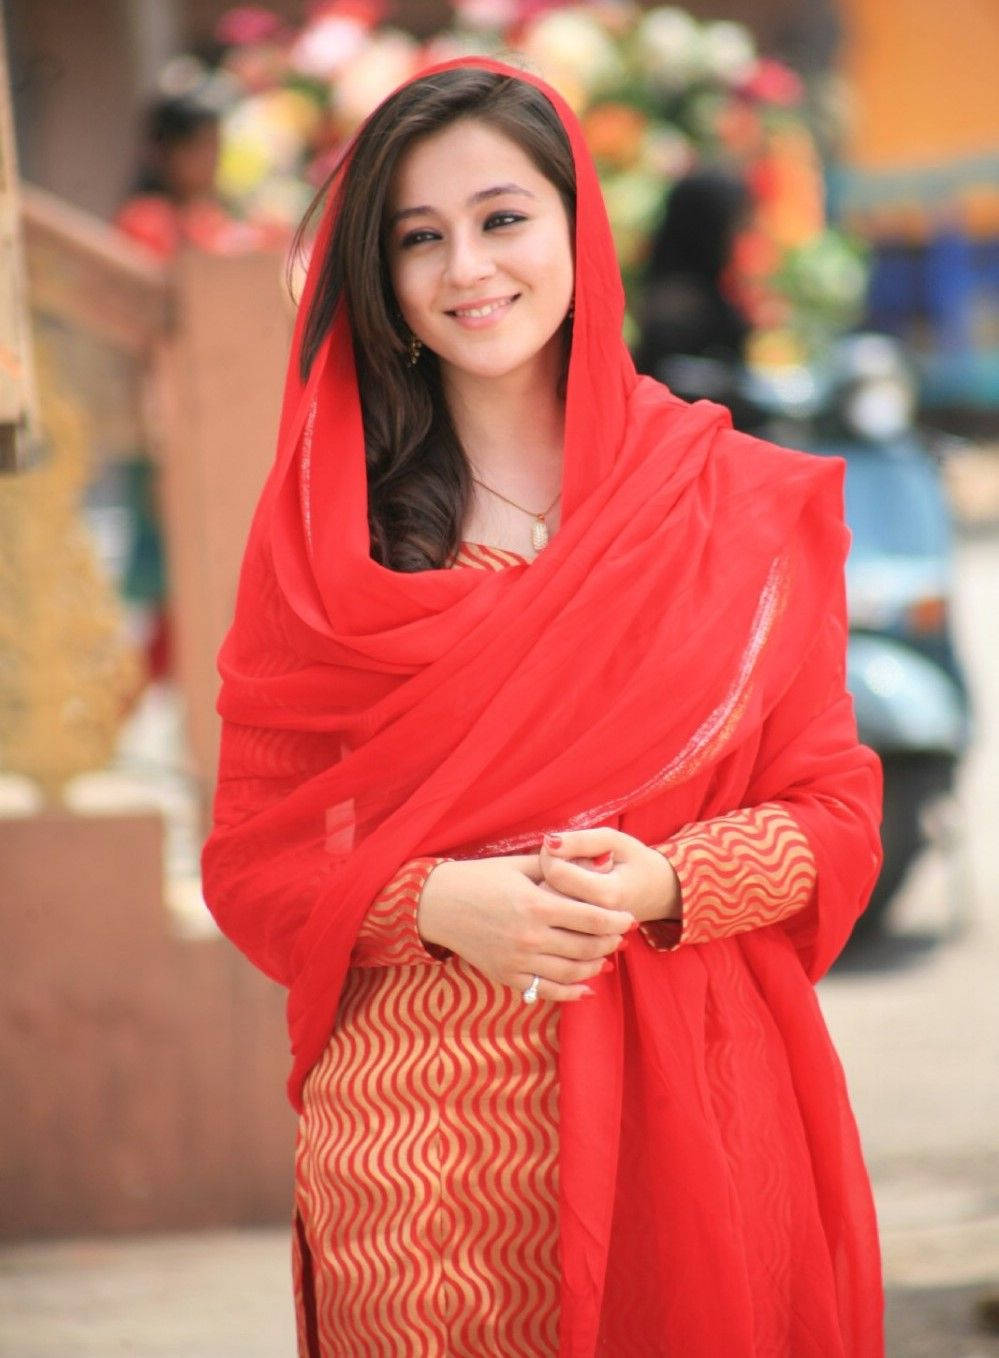 Priyal Gor Hijab Girl In Red